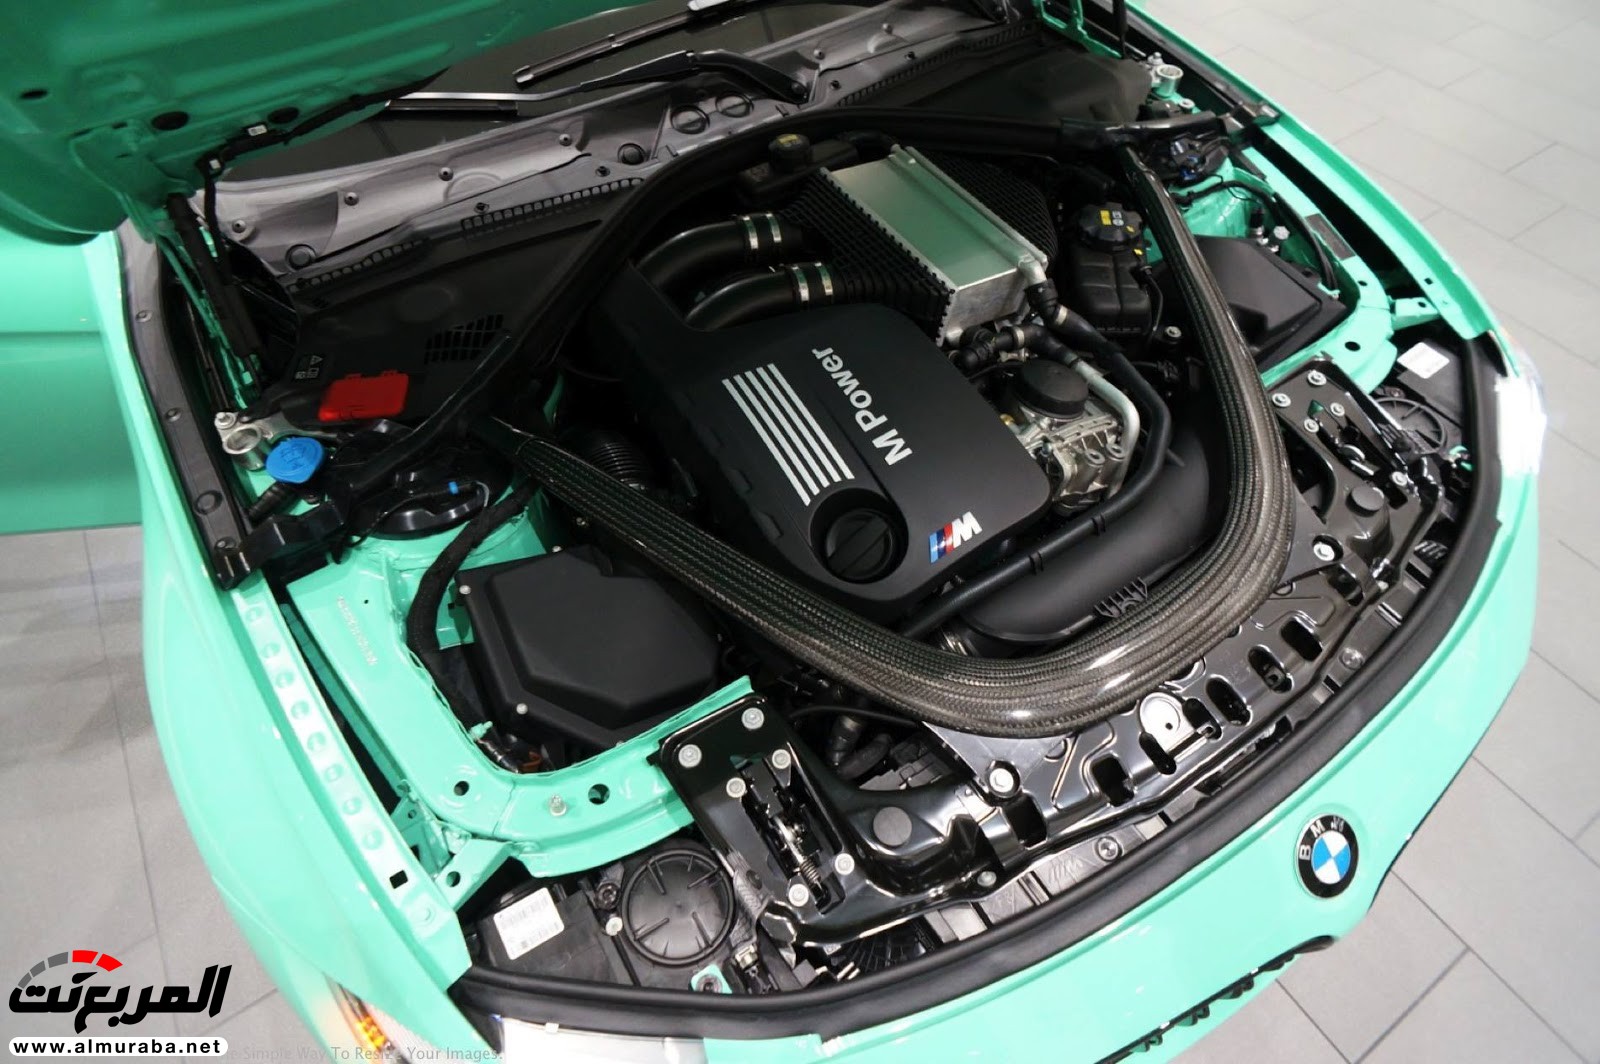 "بالصور" شاهد "بي إم دبليو" F80 M3 الخاصة بطلاء النعناع الأخضر BMW 115